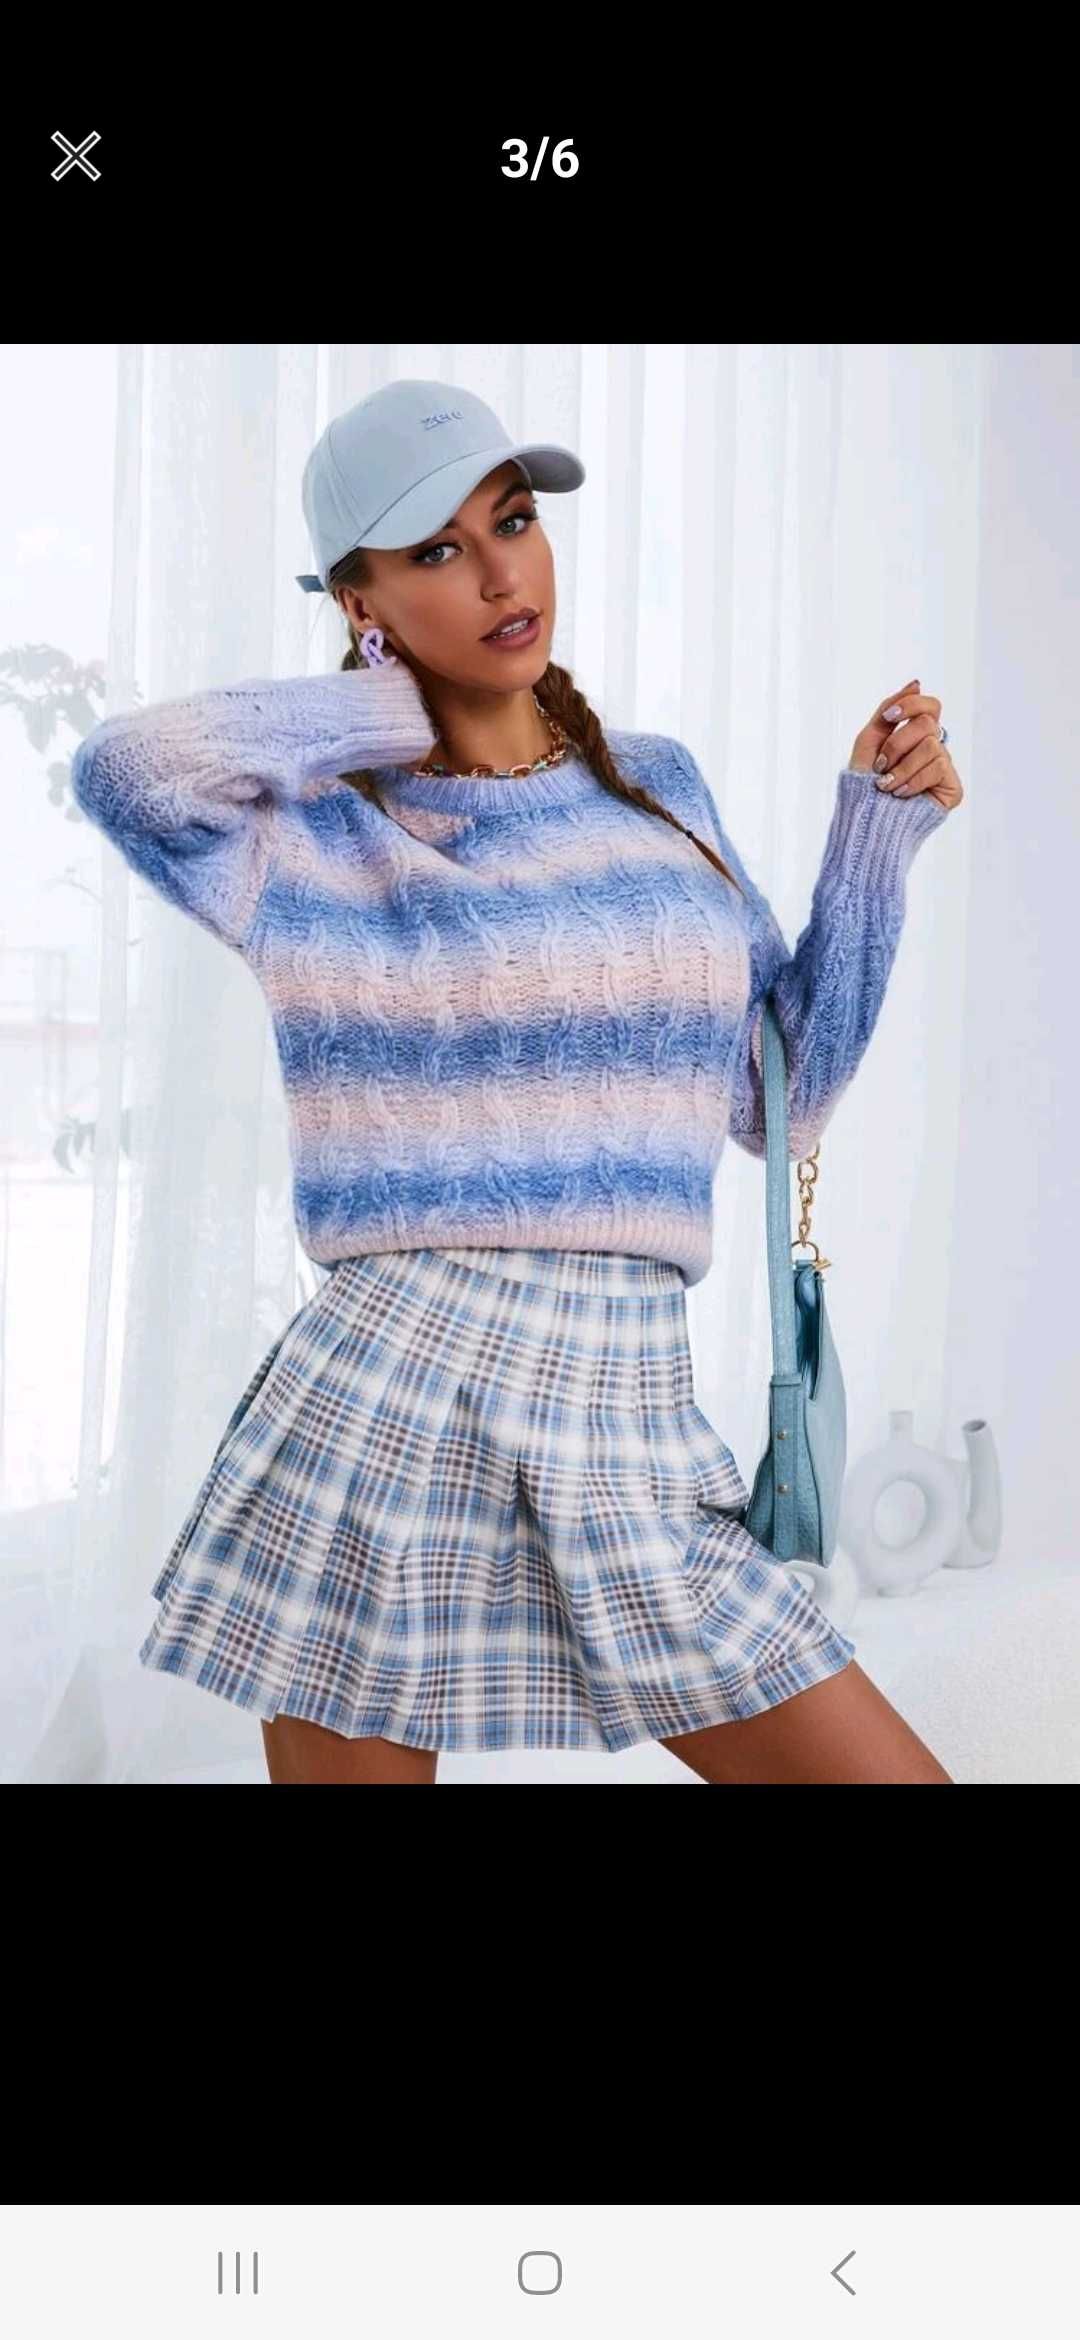 Nowy sweter damski oversize pastelowy w paski na zimę 36 s